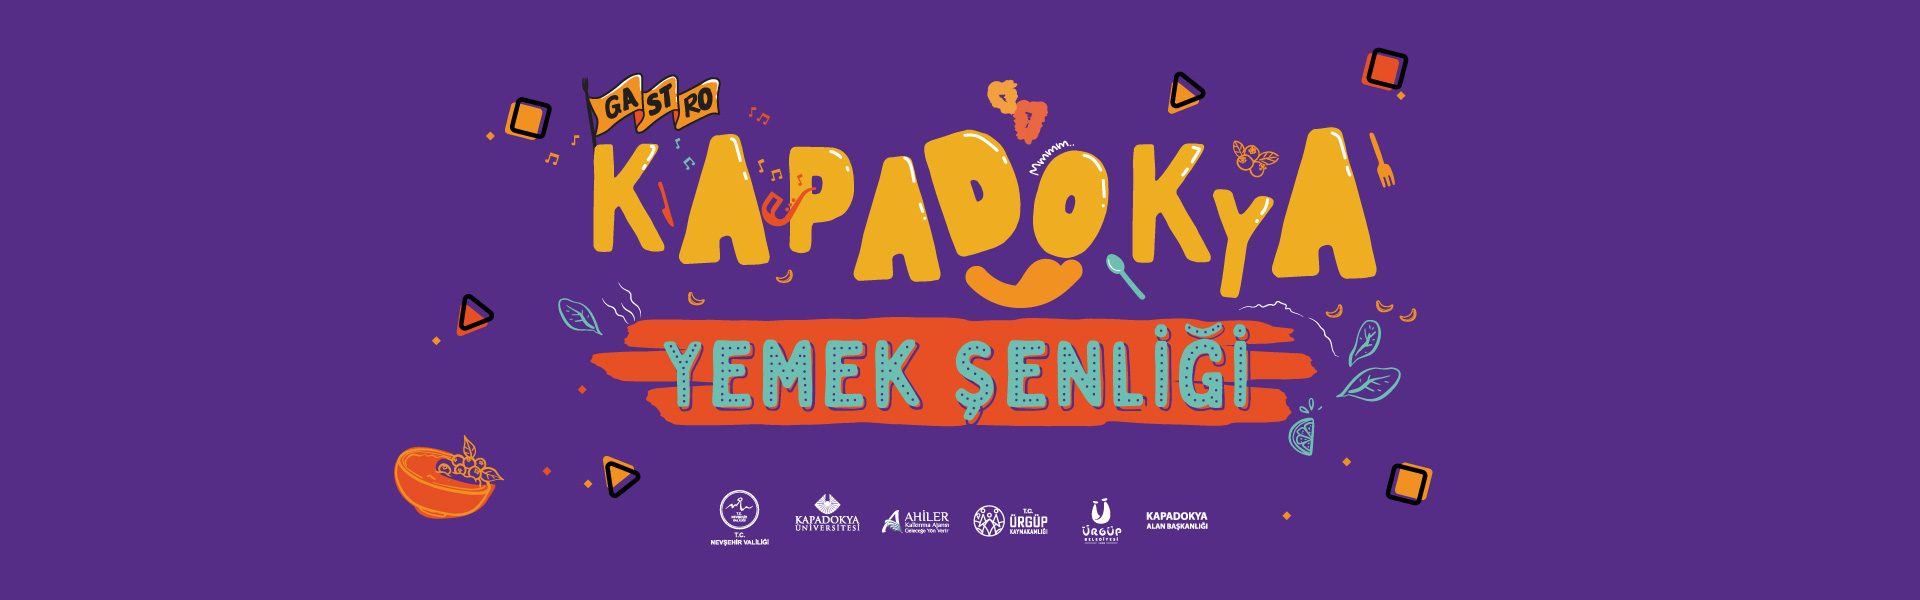  Gastronomi Kapadokya, "Gastro Kapadokya Yemek Şenliği" etkinliği ile tanıtıldı